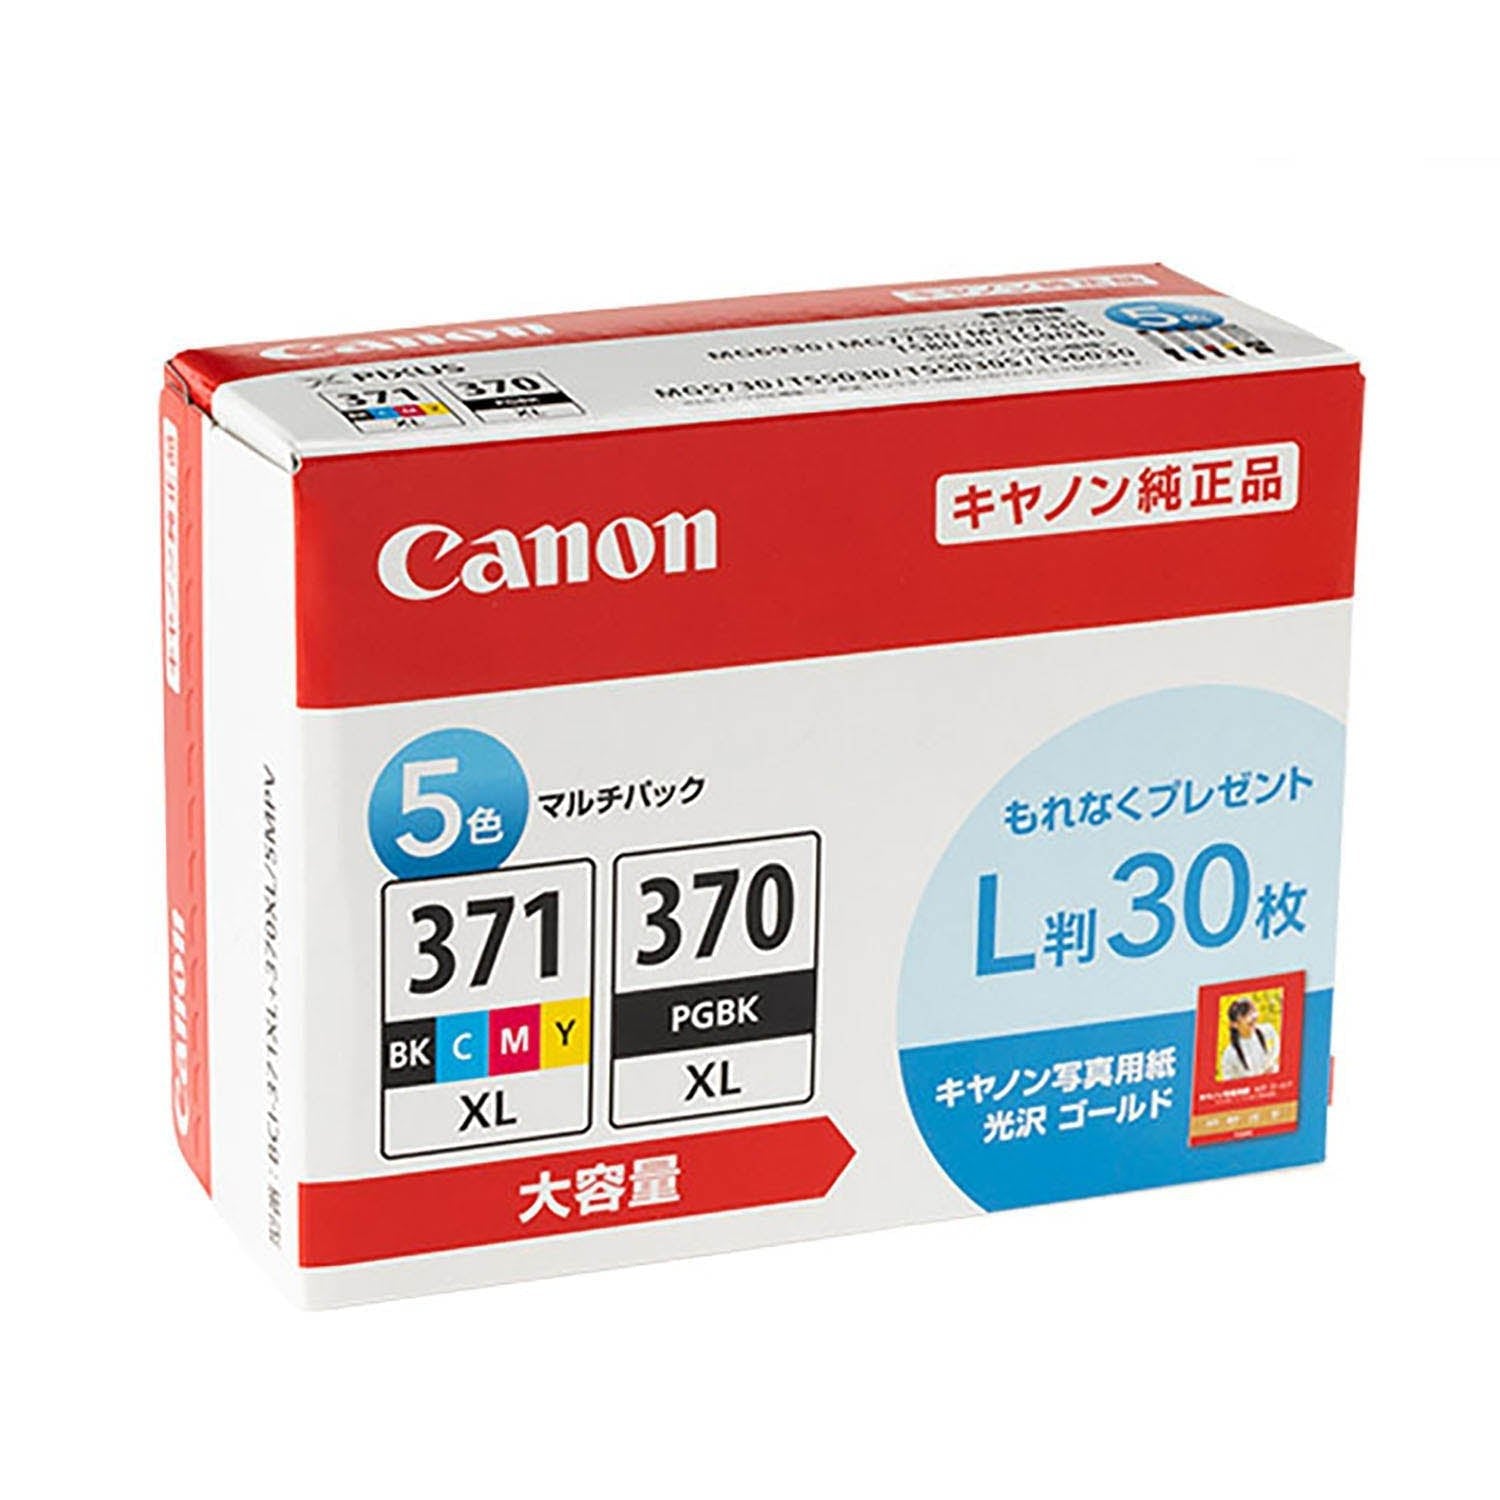 キヤノン用 BCI-371XL+370XL/5MP 純正インク 5色セット 大容量